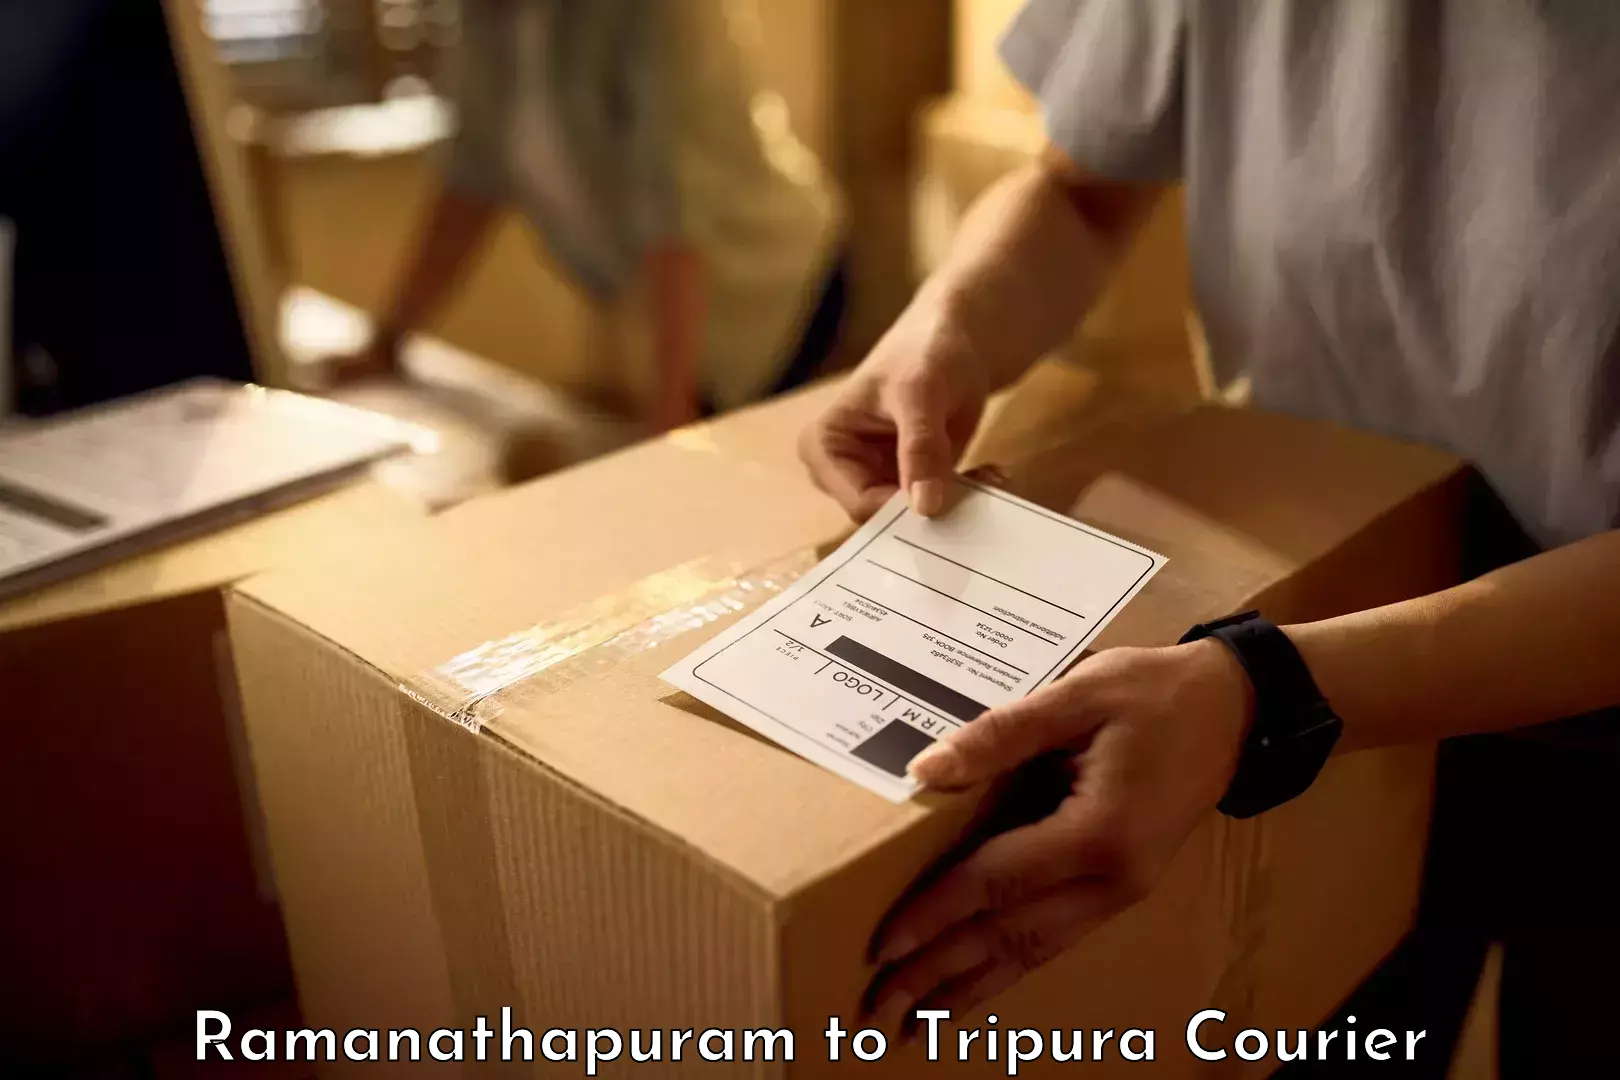 Baggage transport scheduler Ramanathapuram to Tripura